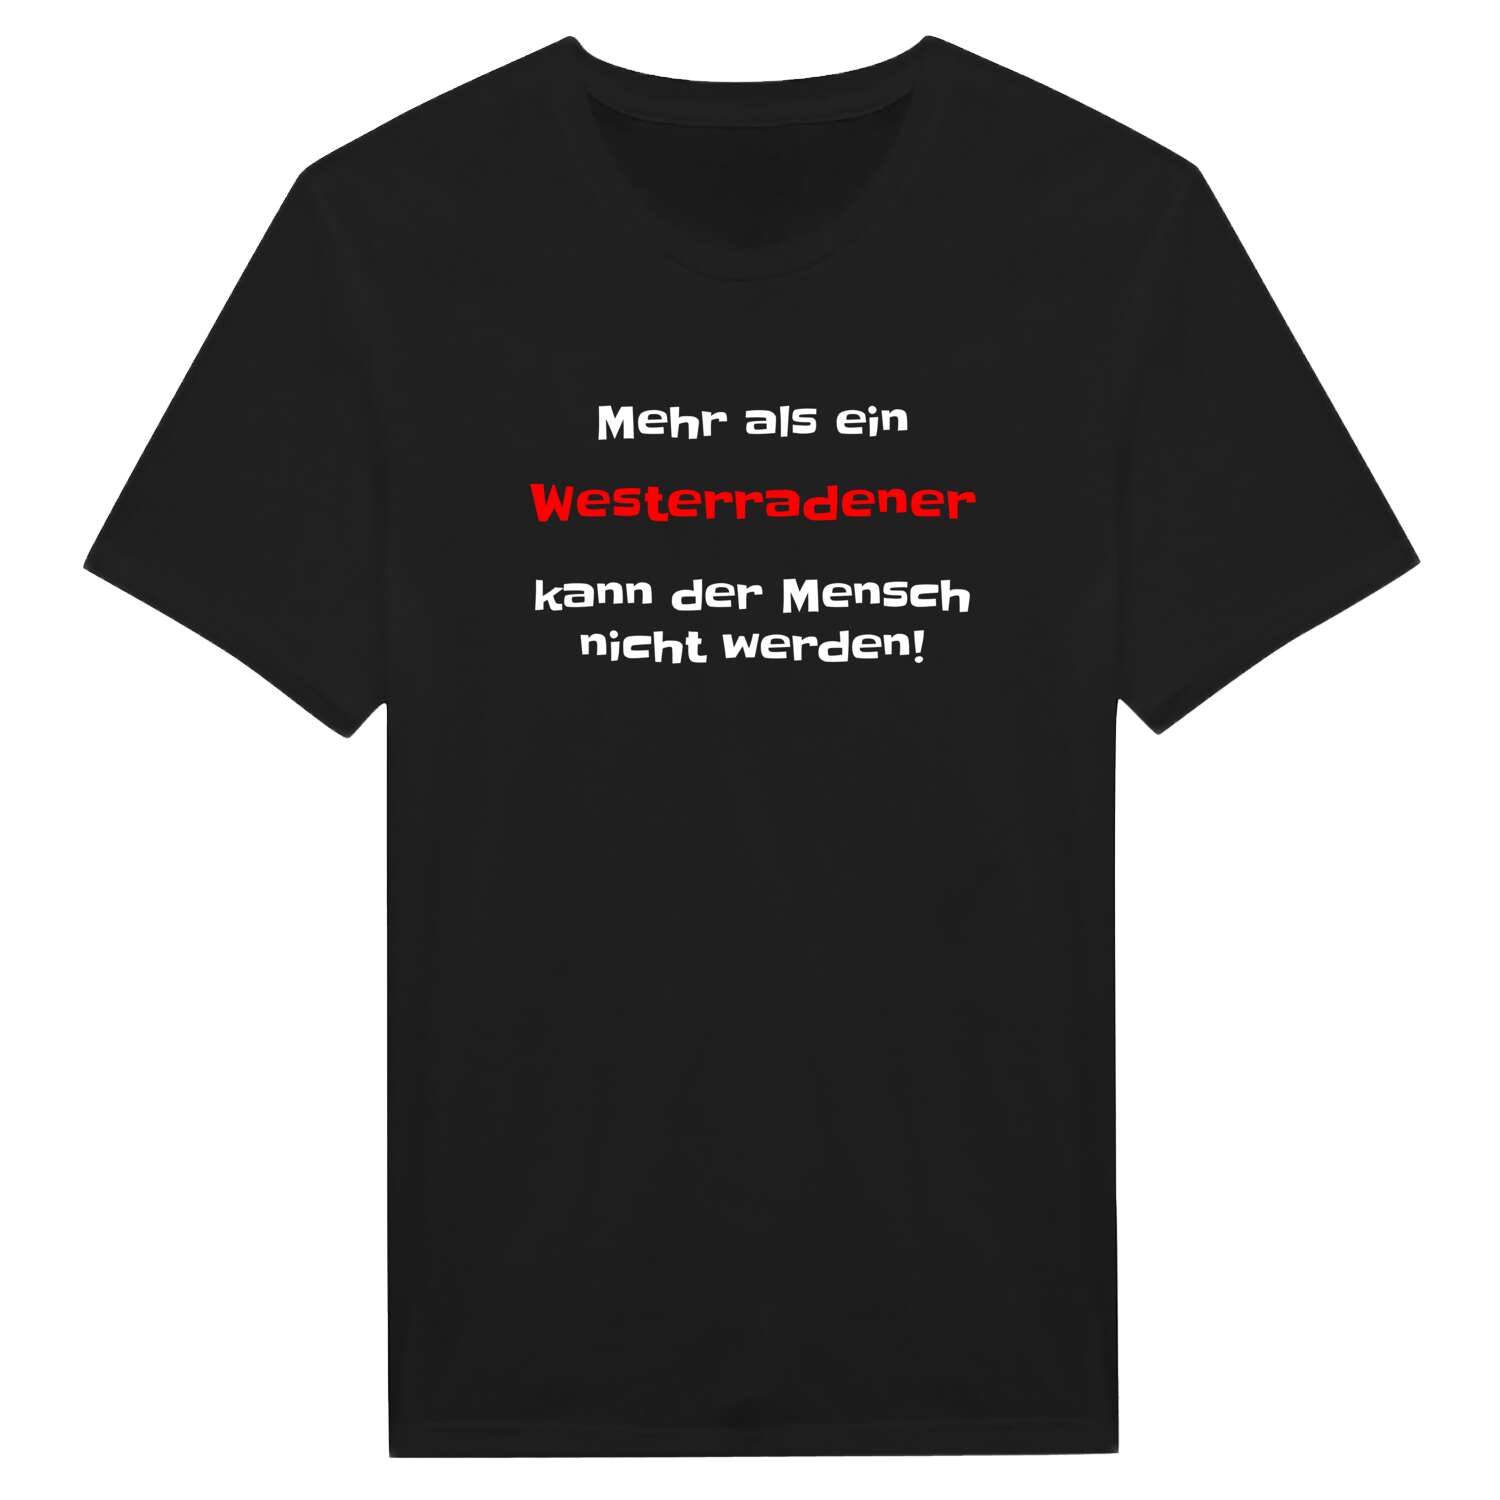 Westerrade T-Shirt »Mehr als ein«